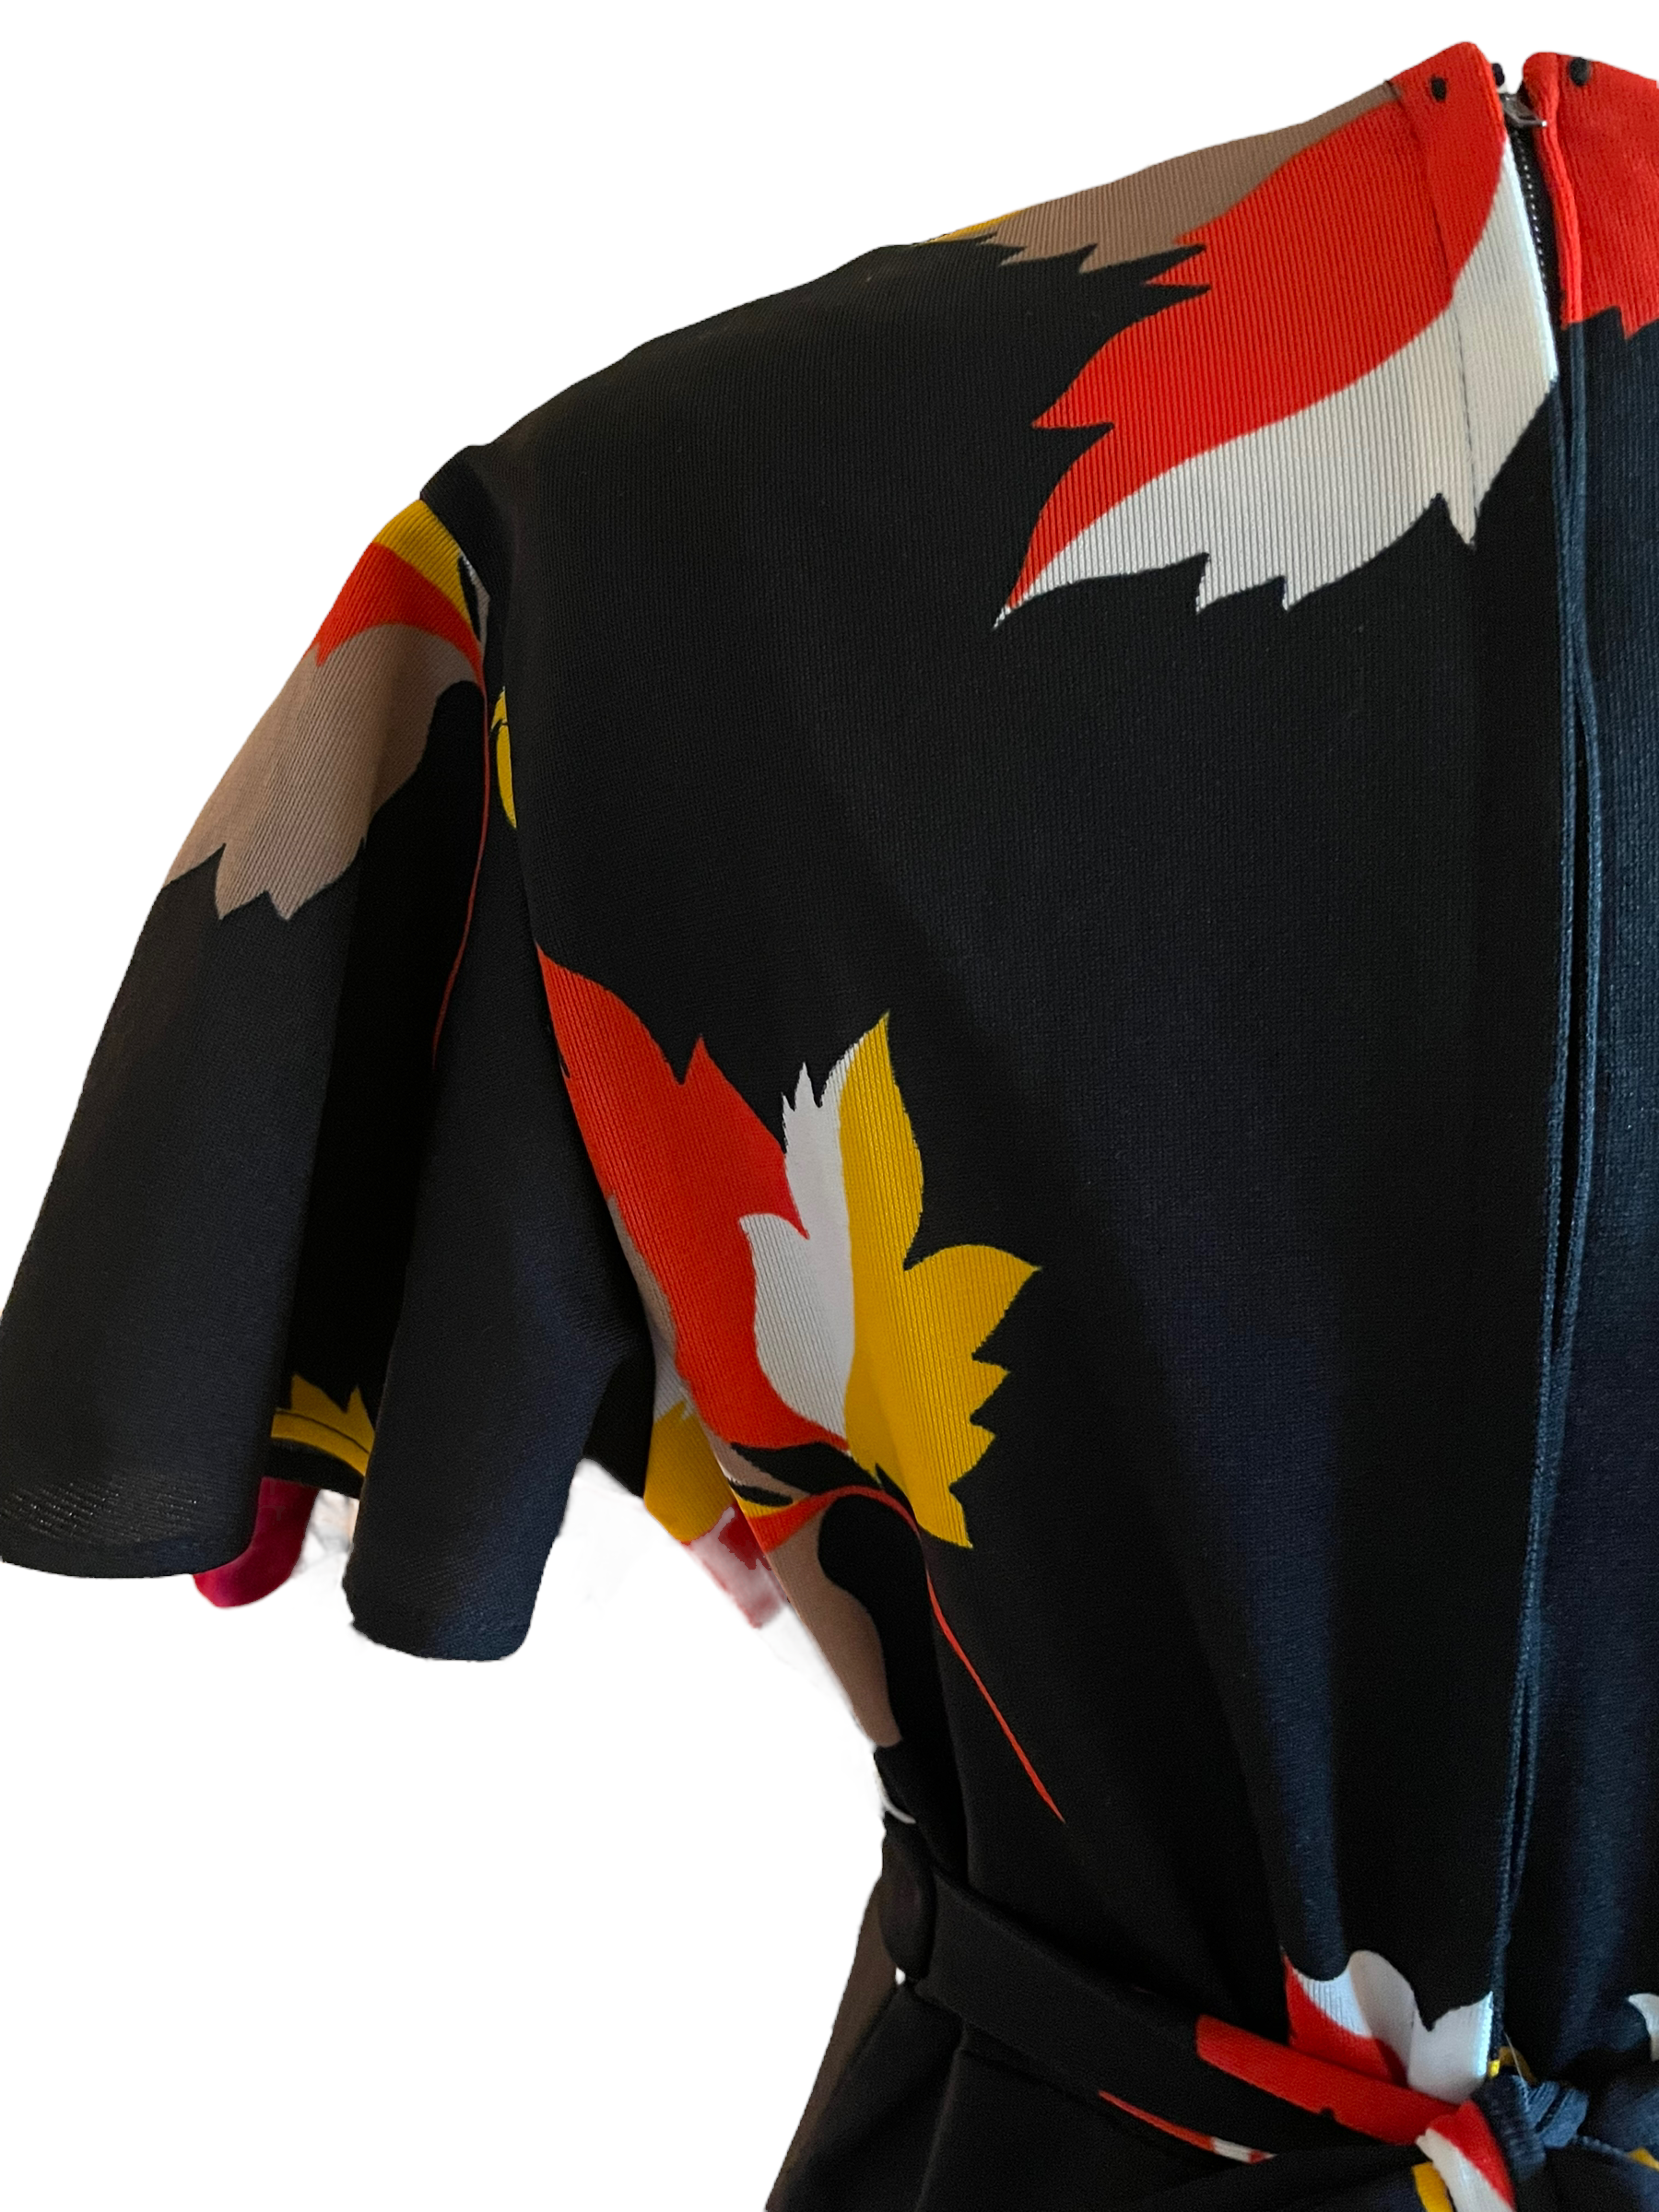 Vintage 1960s Fall Leaves Maxi Dress |  Barn Owl Vintage | Seattle Vintage Dresses Back left shoulder view.